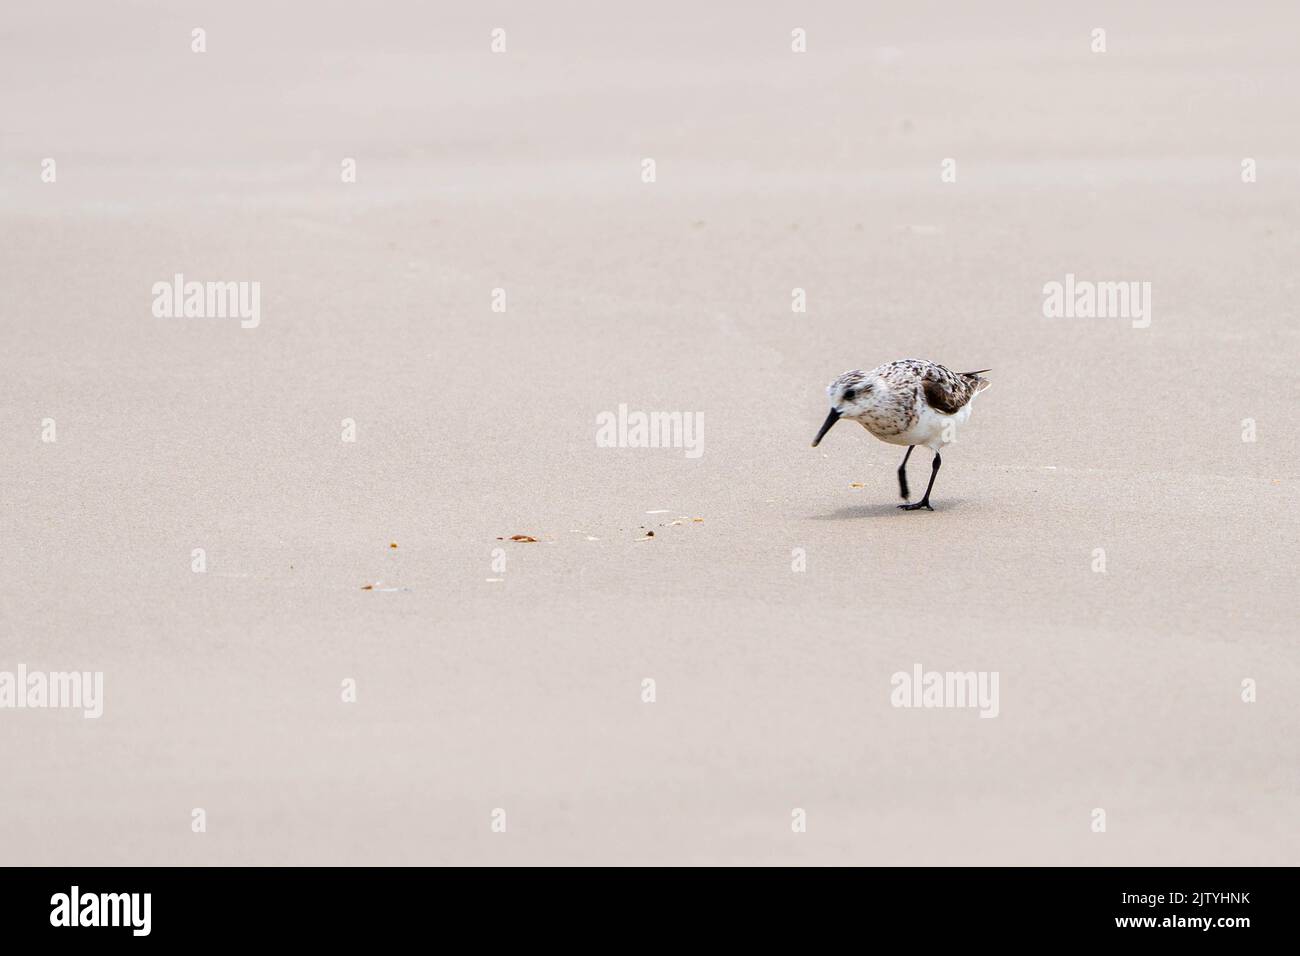 A wild bird on the sea shore Stock Photo